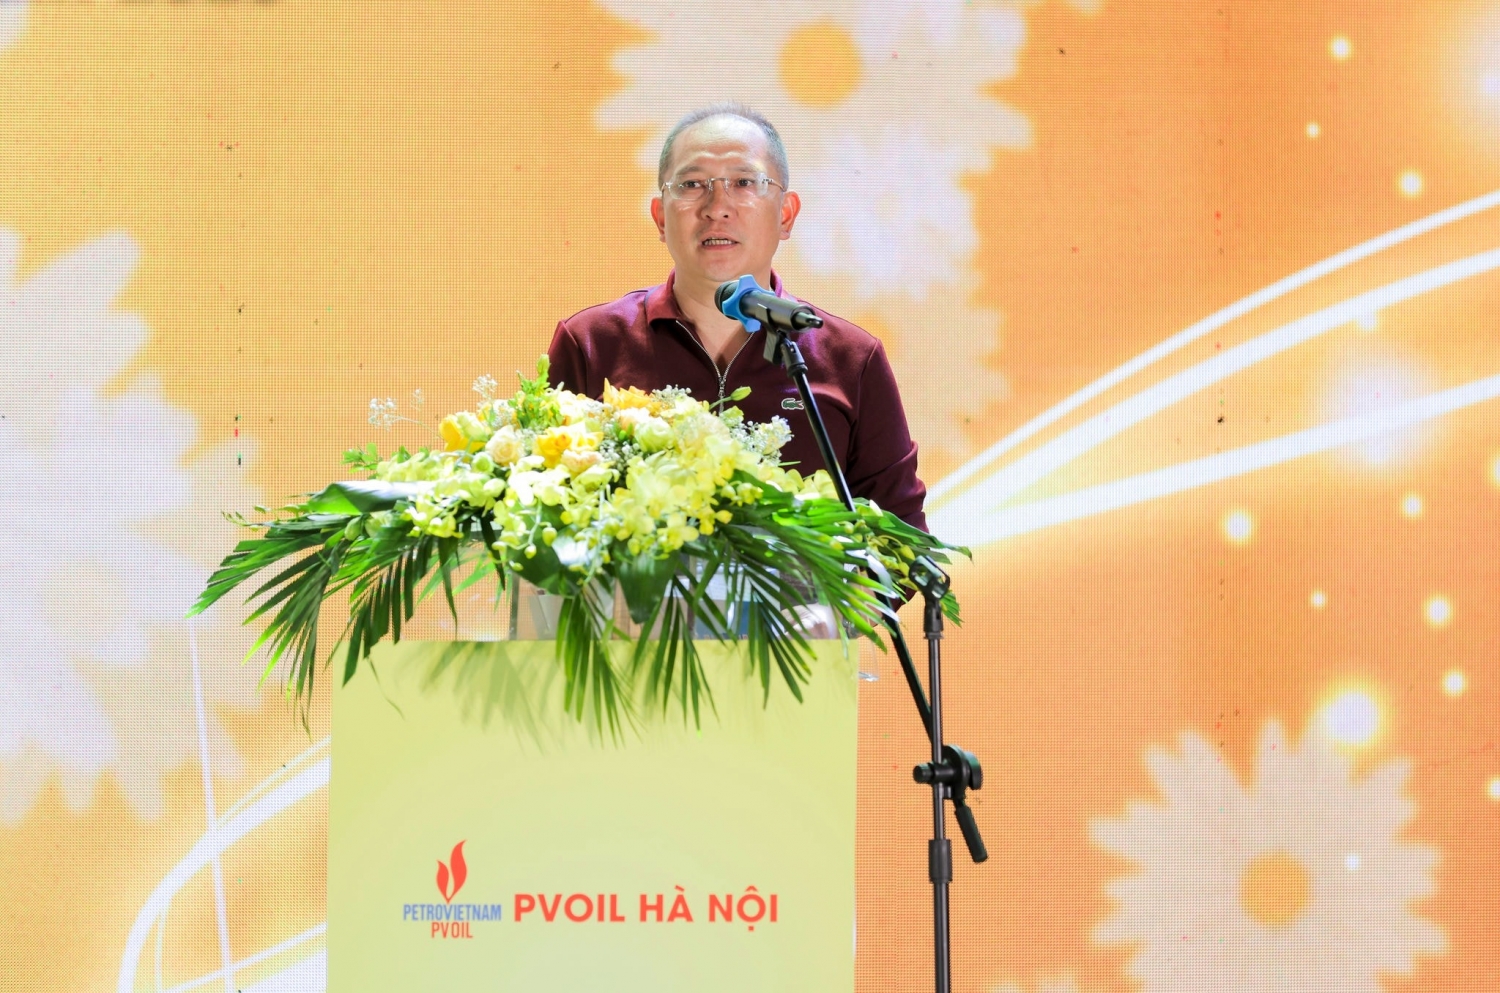 Ông Trần Mạnh Hà, Bí thư Đảng ủy, Giám đốc Công ty phát biểu